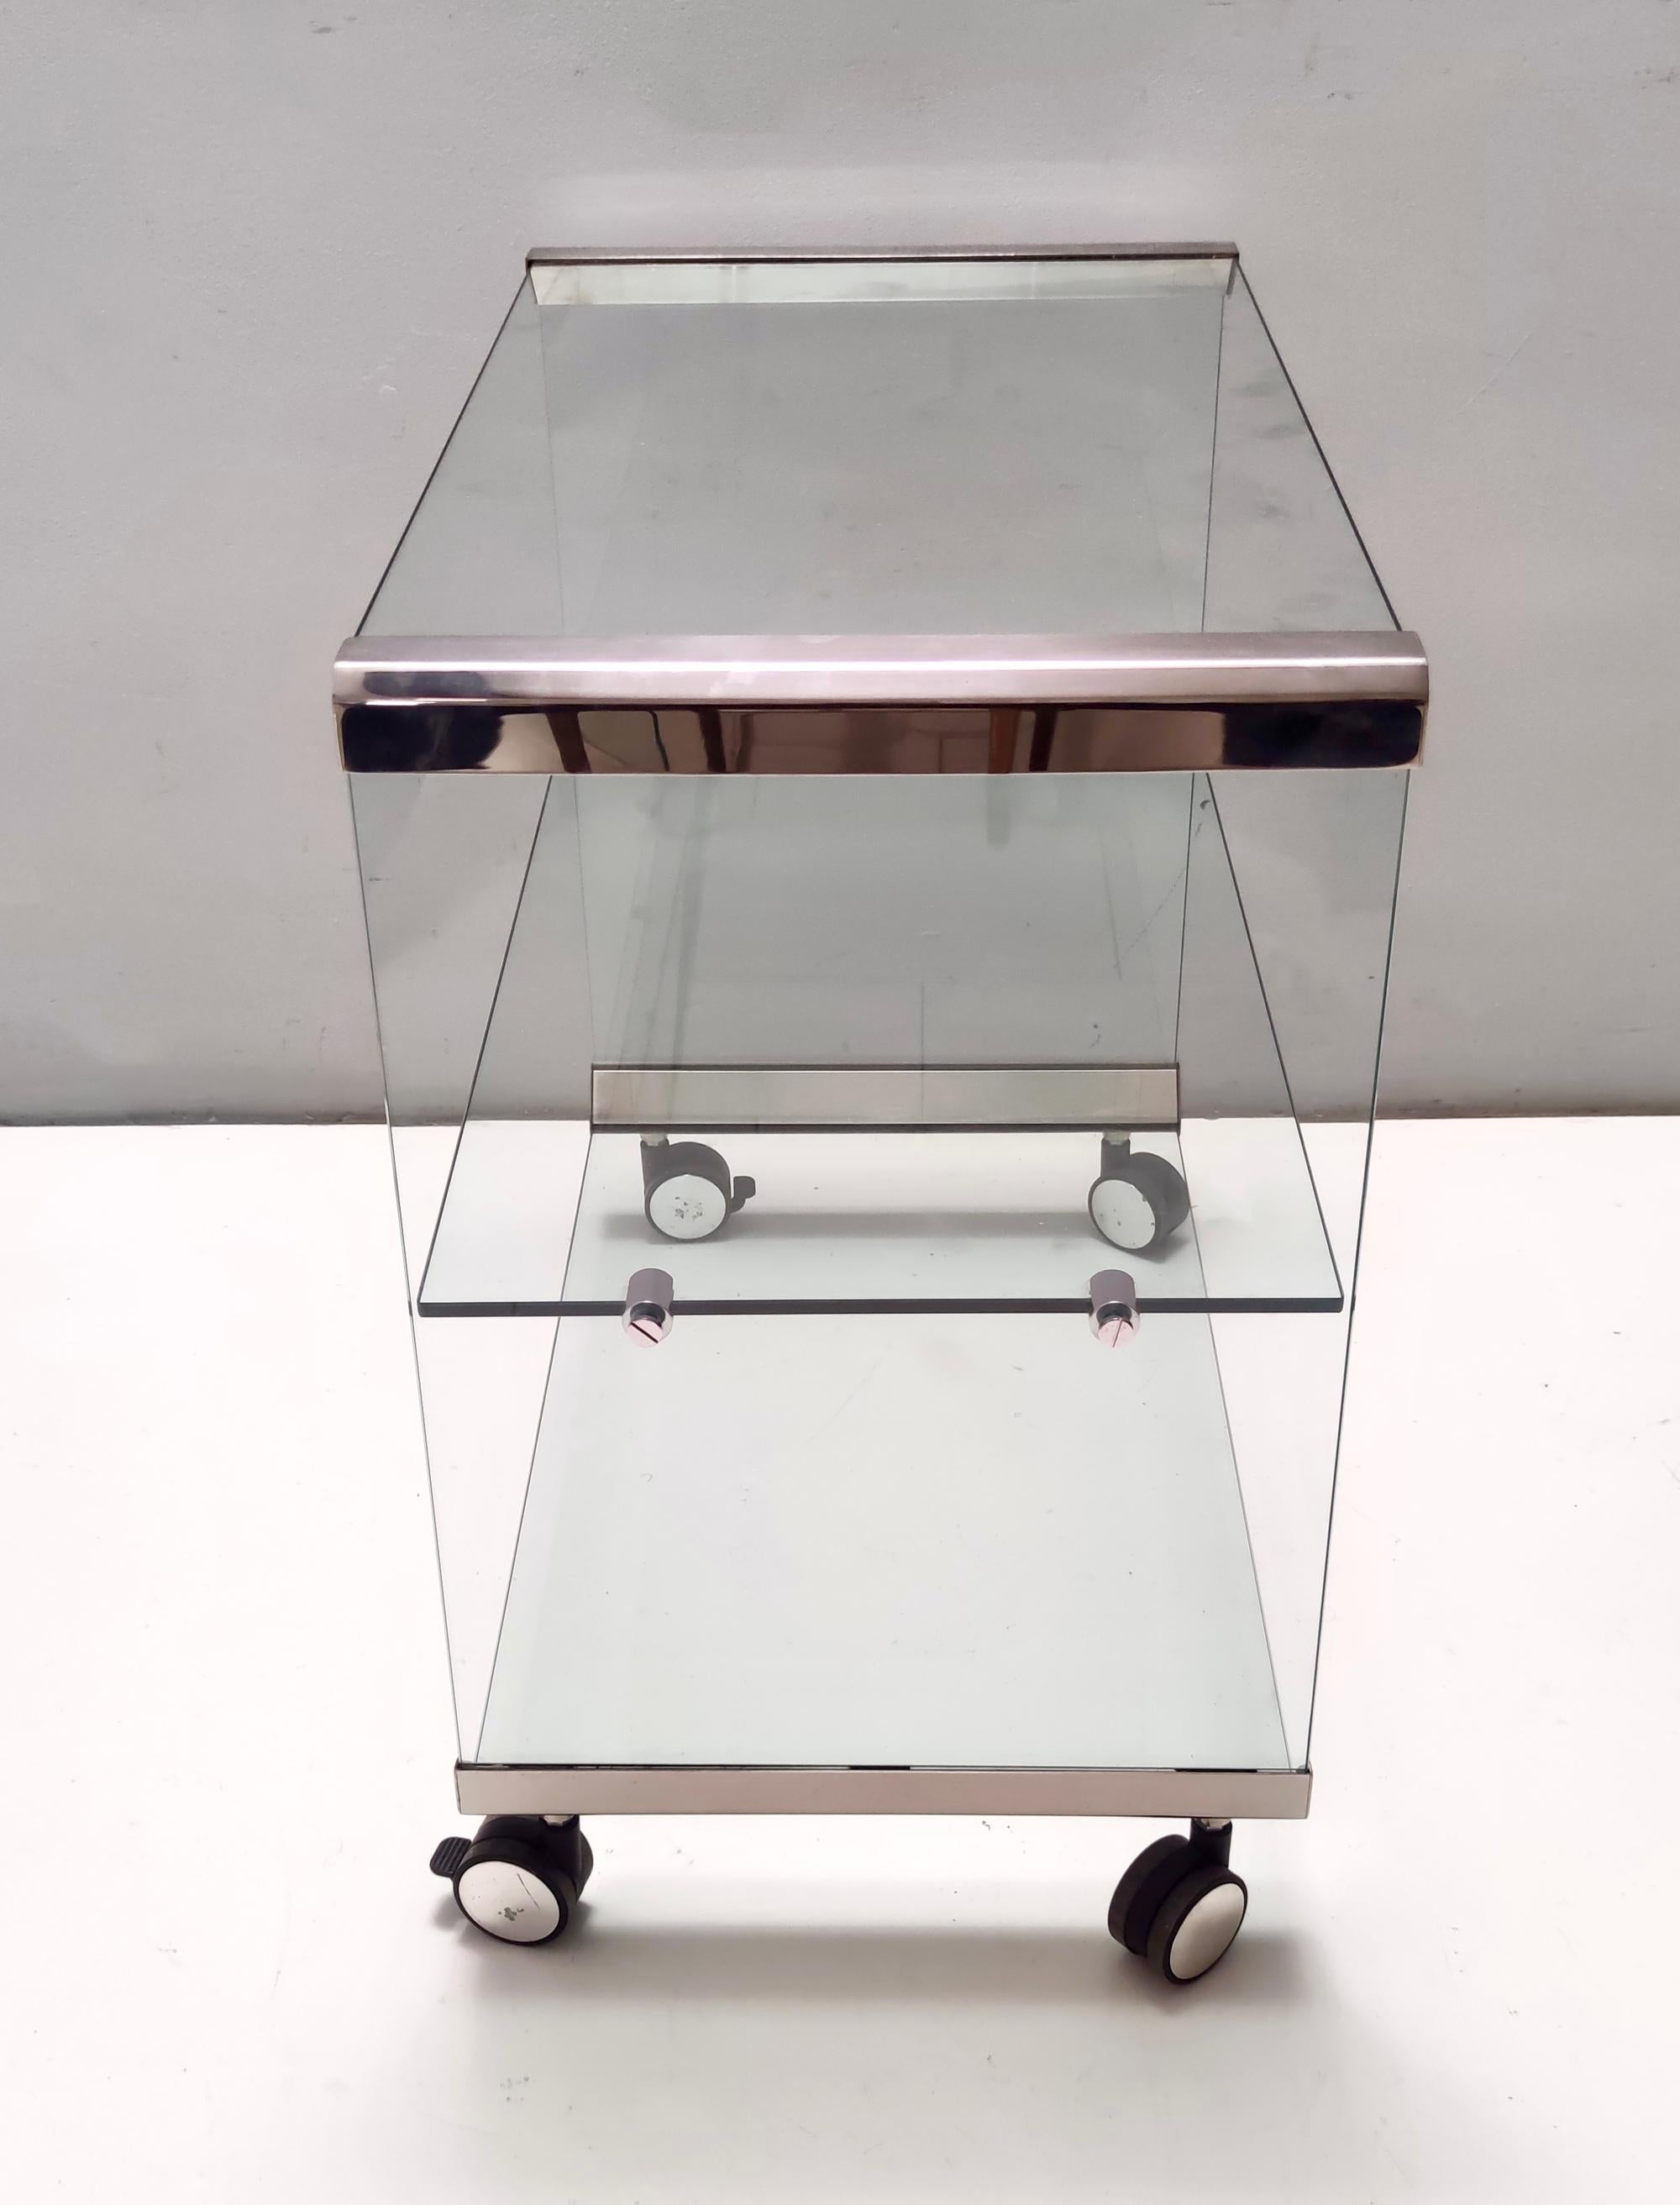 Fabriqué en Italie, années 1970-1980.
Cette étagère / table d'appoint est fabriquée en verre trempé et comporte une étagère en verre, des pièces en acier et des roulettes.
Il peut présenter de légères traces d'utilisation puisqu'il est vintage, mais